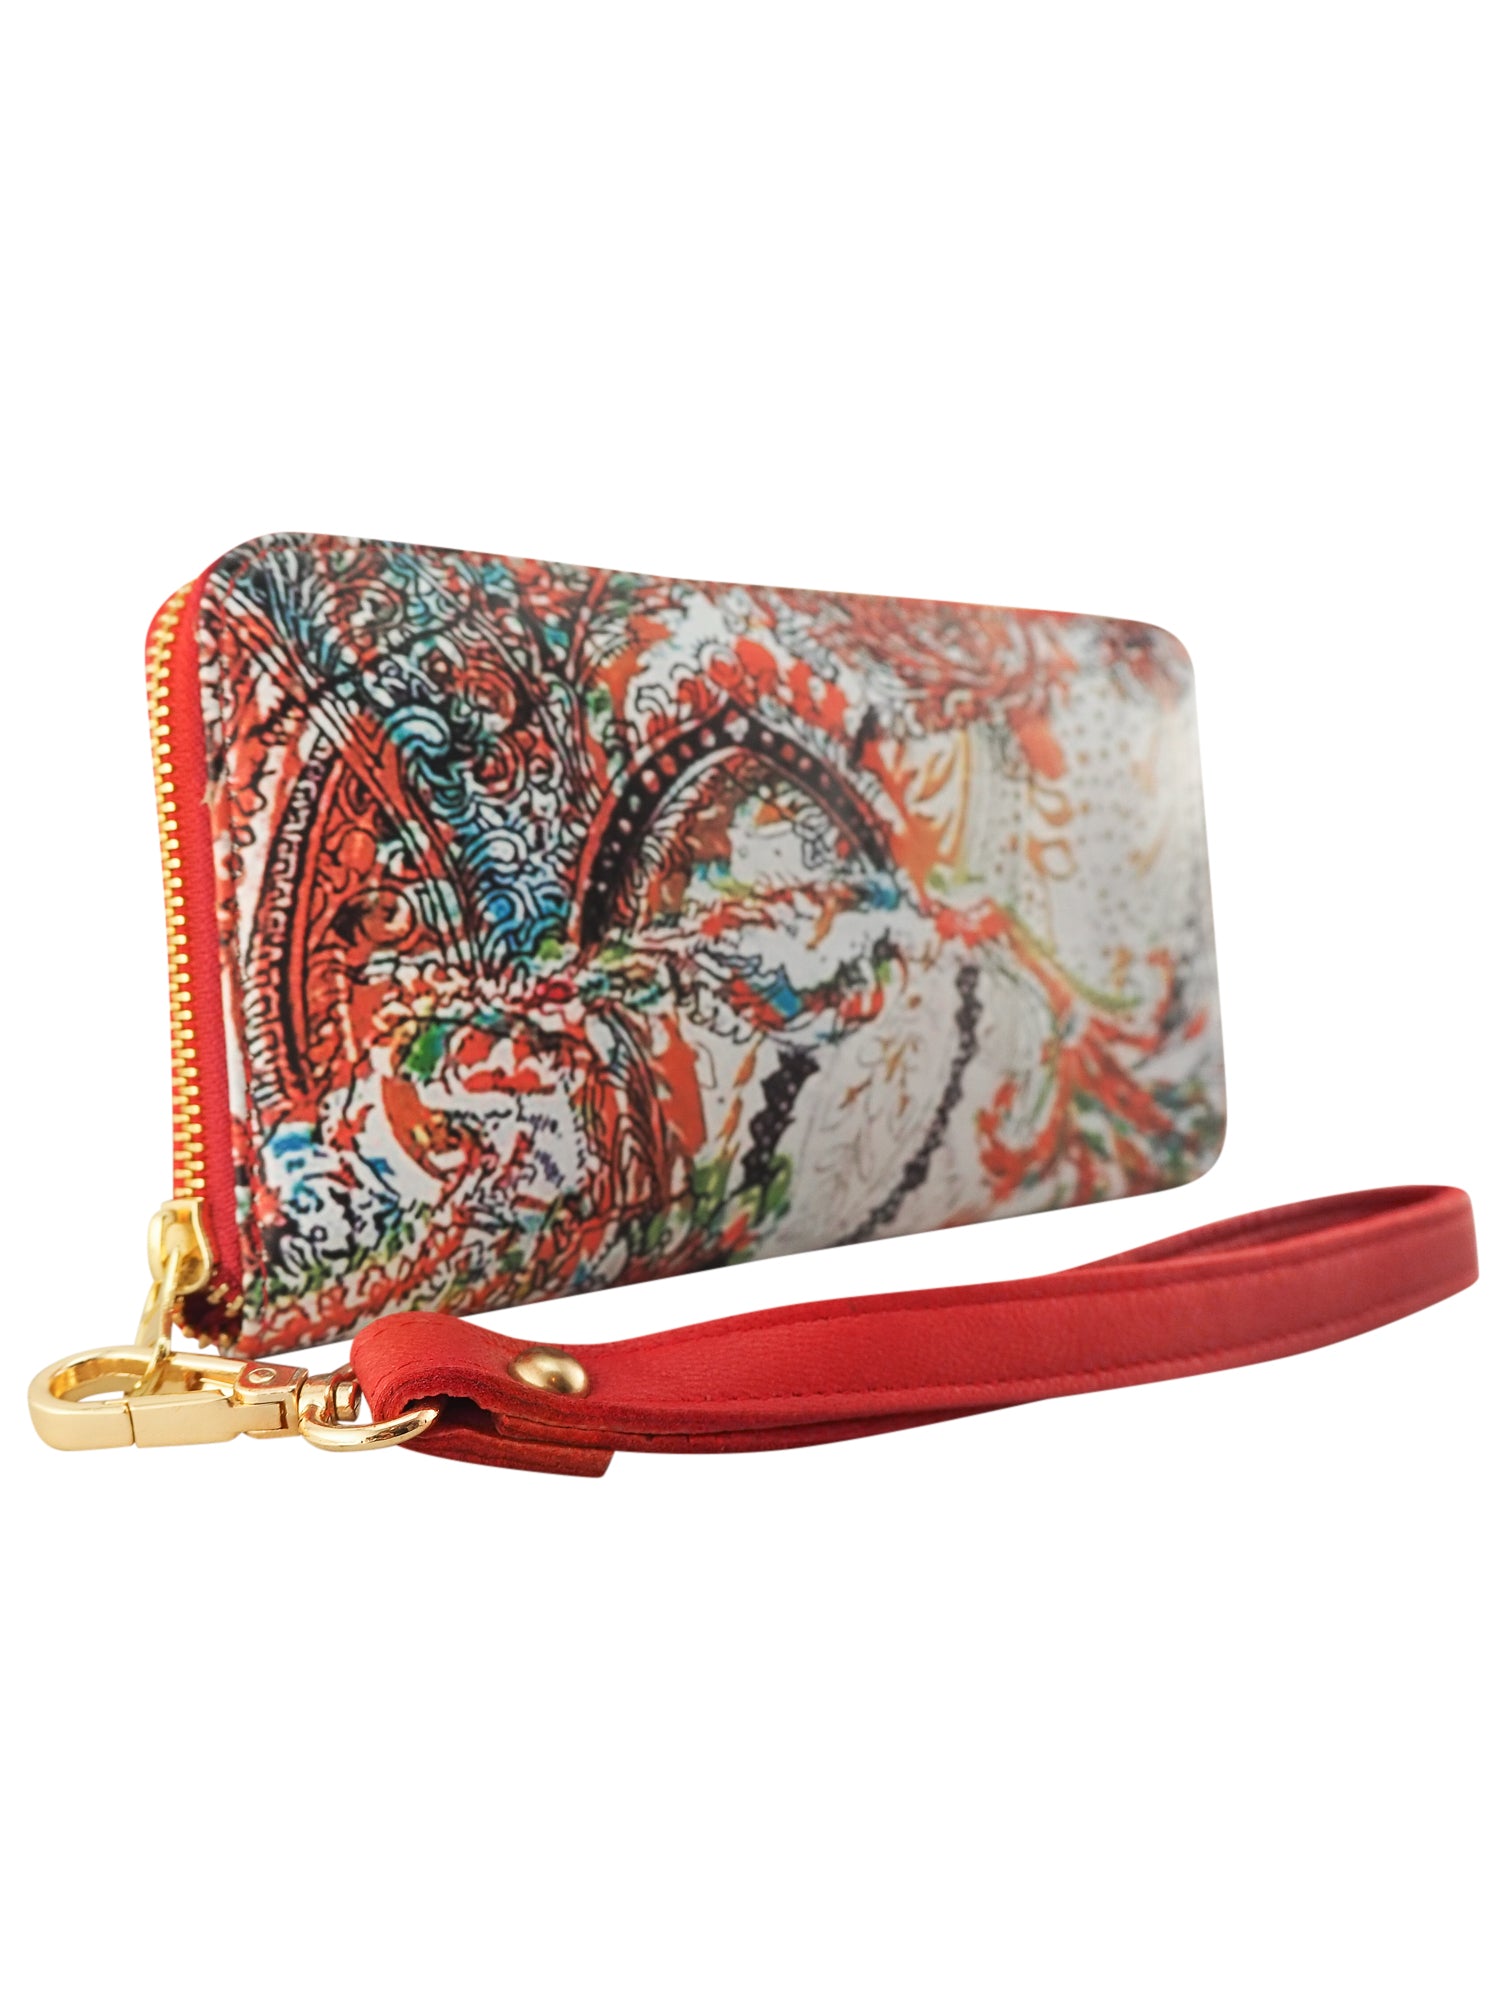 Bella Printed Wallet | Paisley/Red-Handbag & Wallet Accessories-CadelleLeather